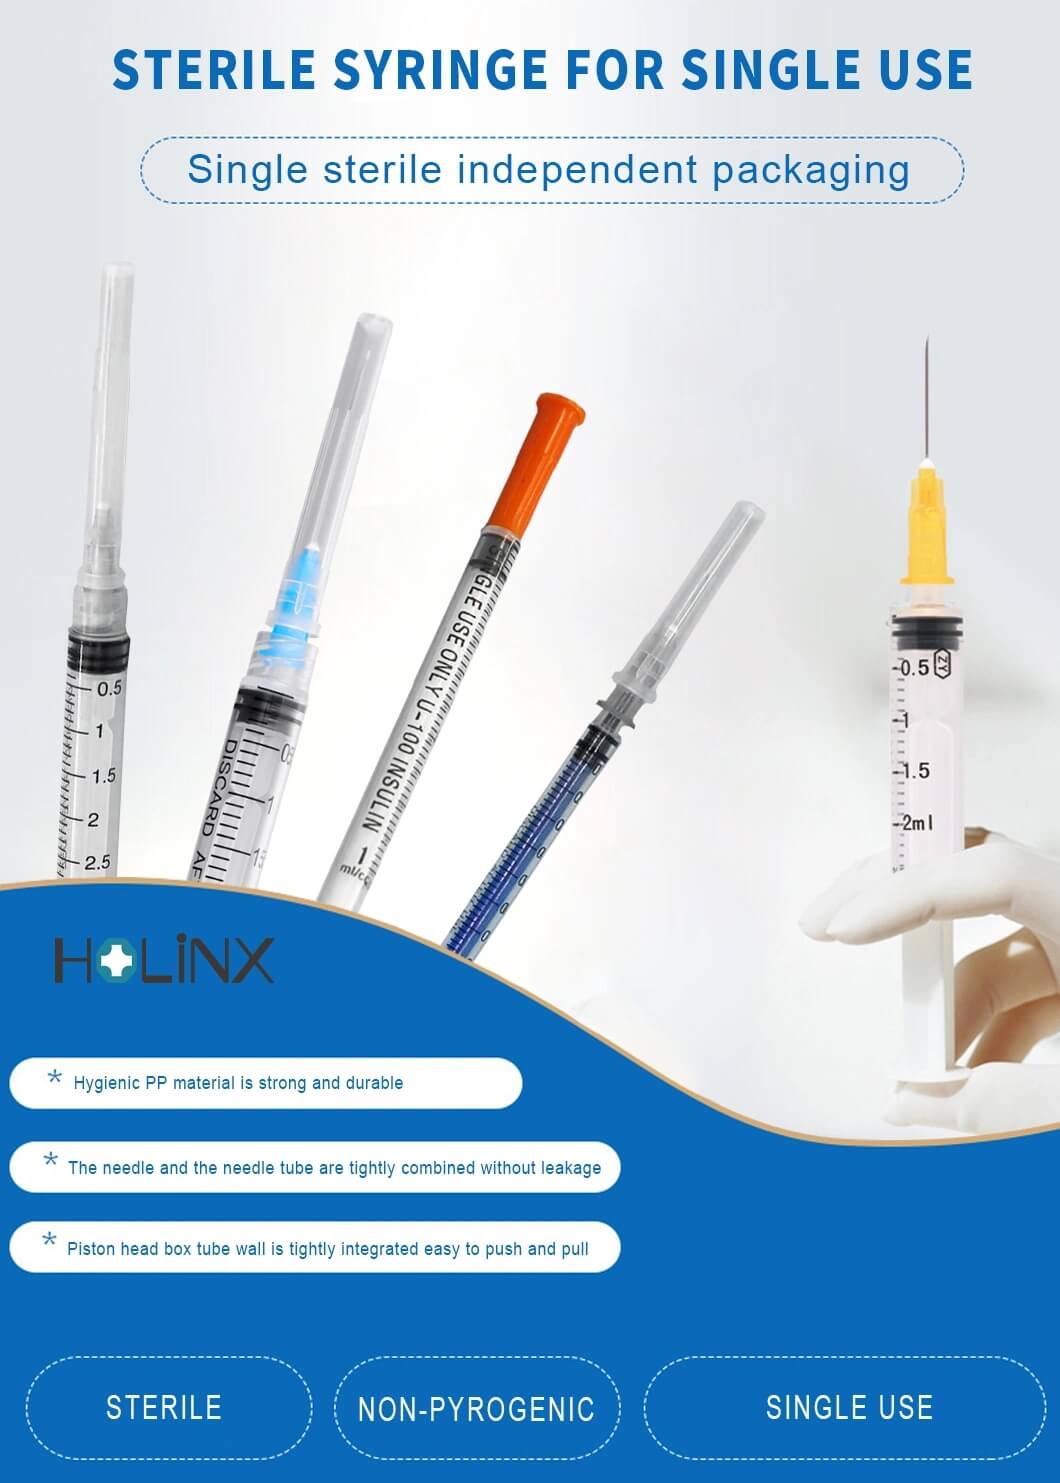 3ml Luer Lock Syringe without Needle